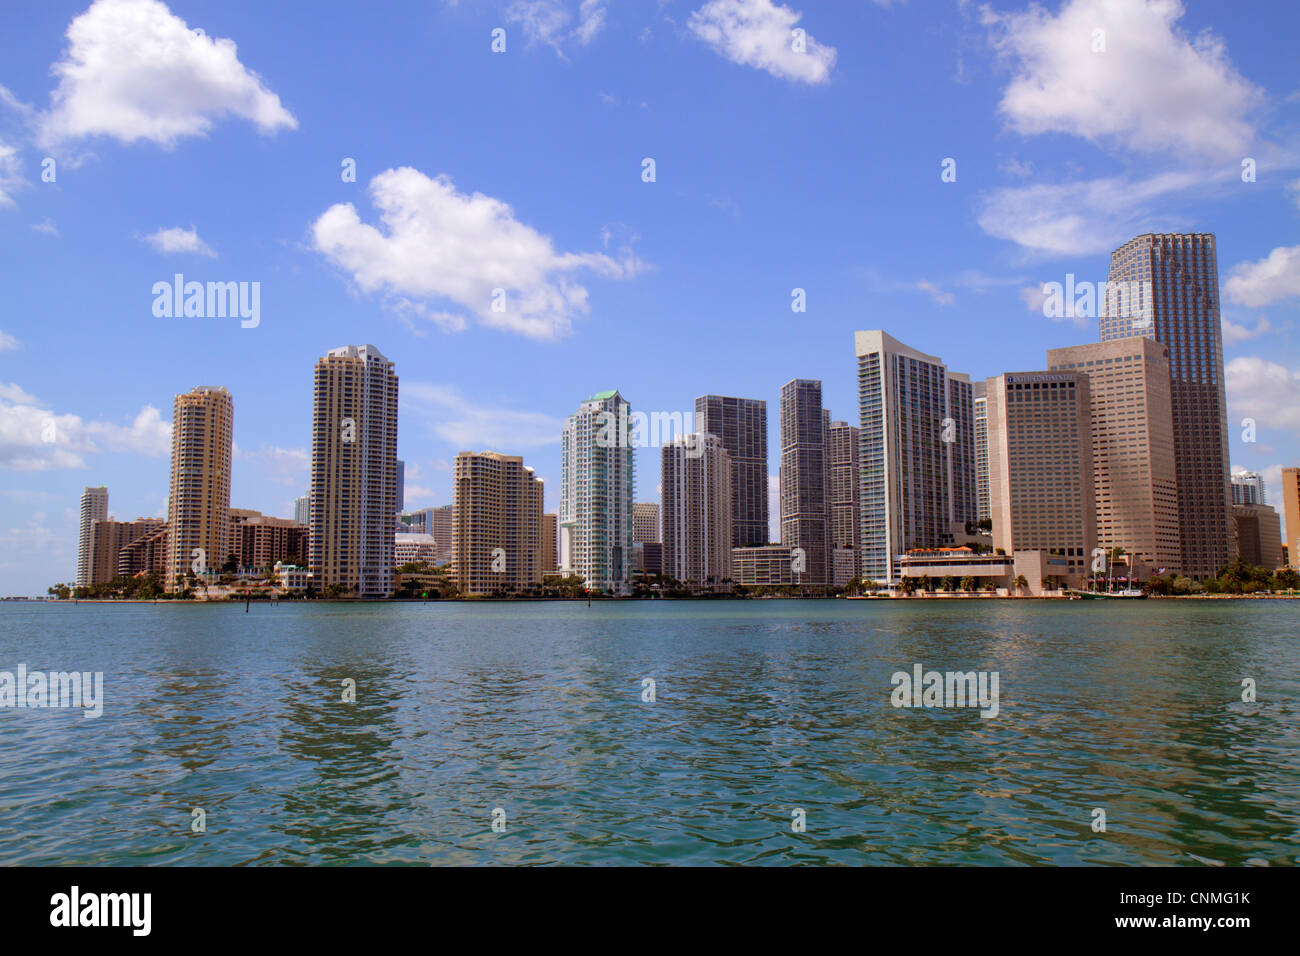 Miami Florida, Biscayne Bay, Downtown City Skyline, Bürogebäude, City Skyline, Hochhaus Wolkenkratzer Gebäude Wohnanlage Stockfoto